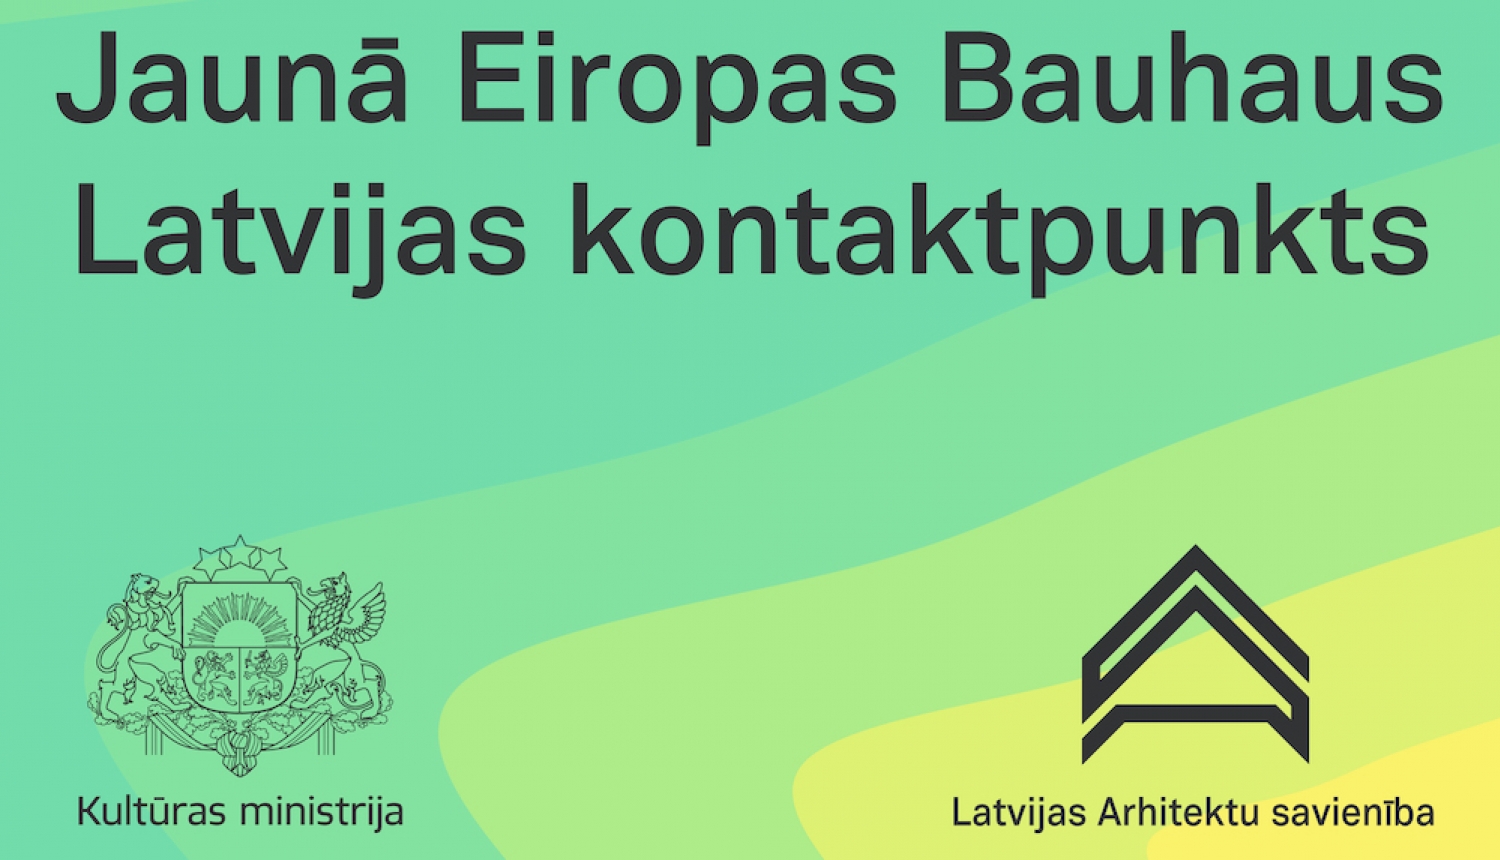 “Jaunā Eiropas Bauhaus” Latvijas kontaktpunkta vizuālais materiāls